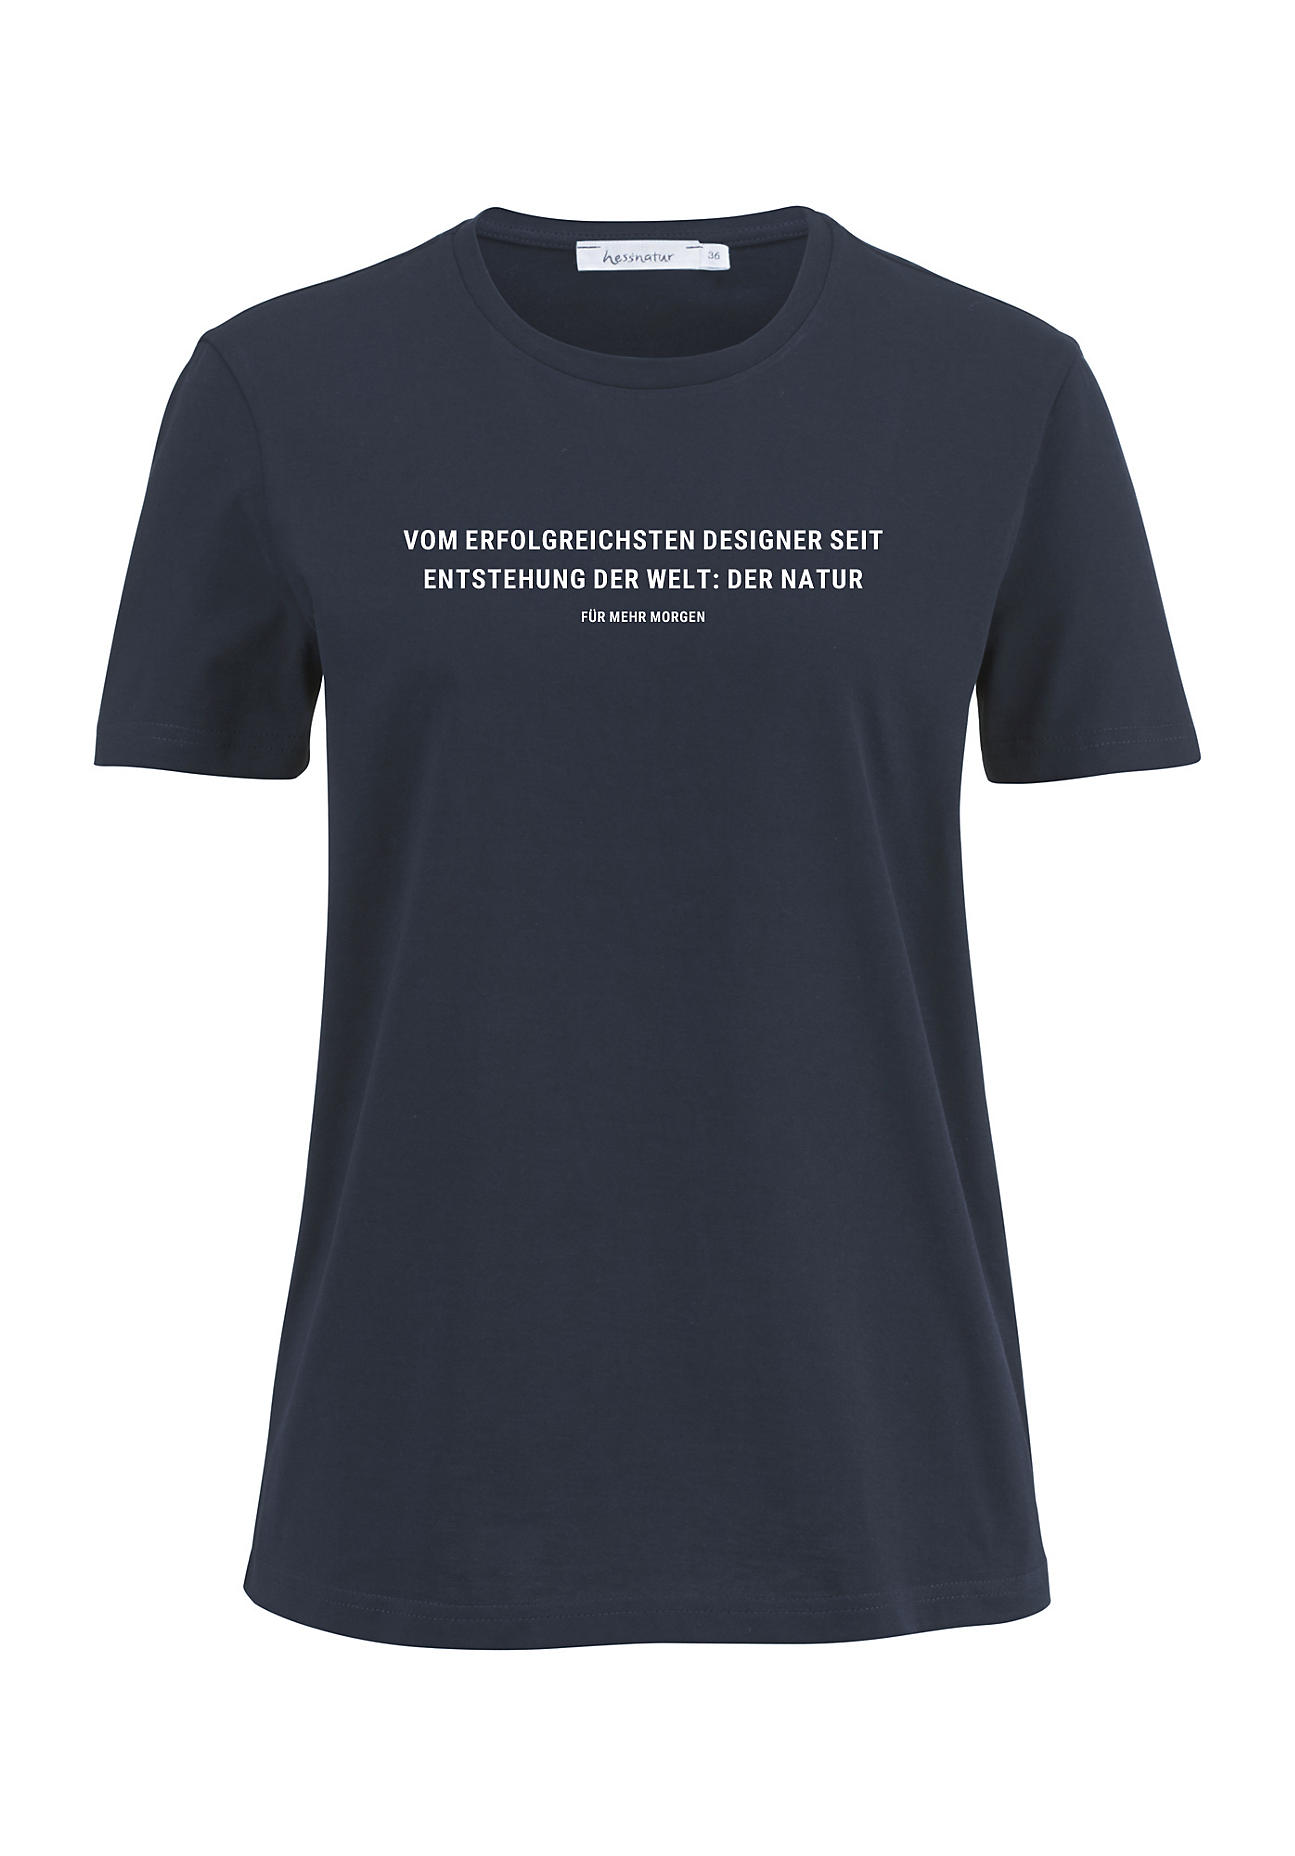 hessnatur Damen Statement Shirt aus Bio-Baumwolle - blau - Größe 40